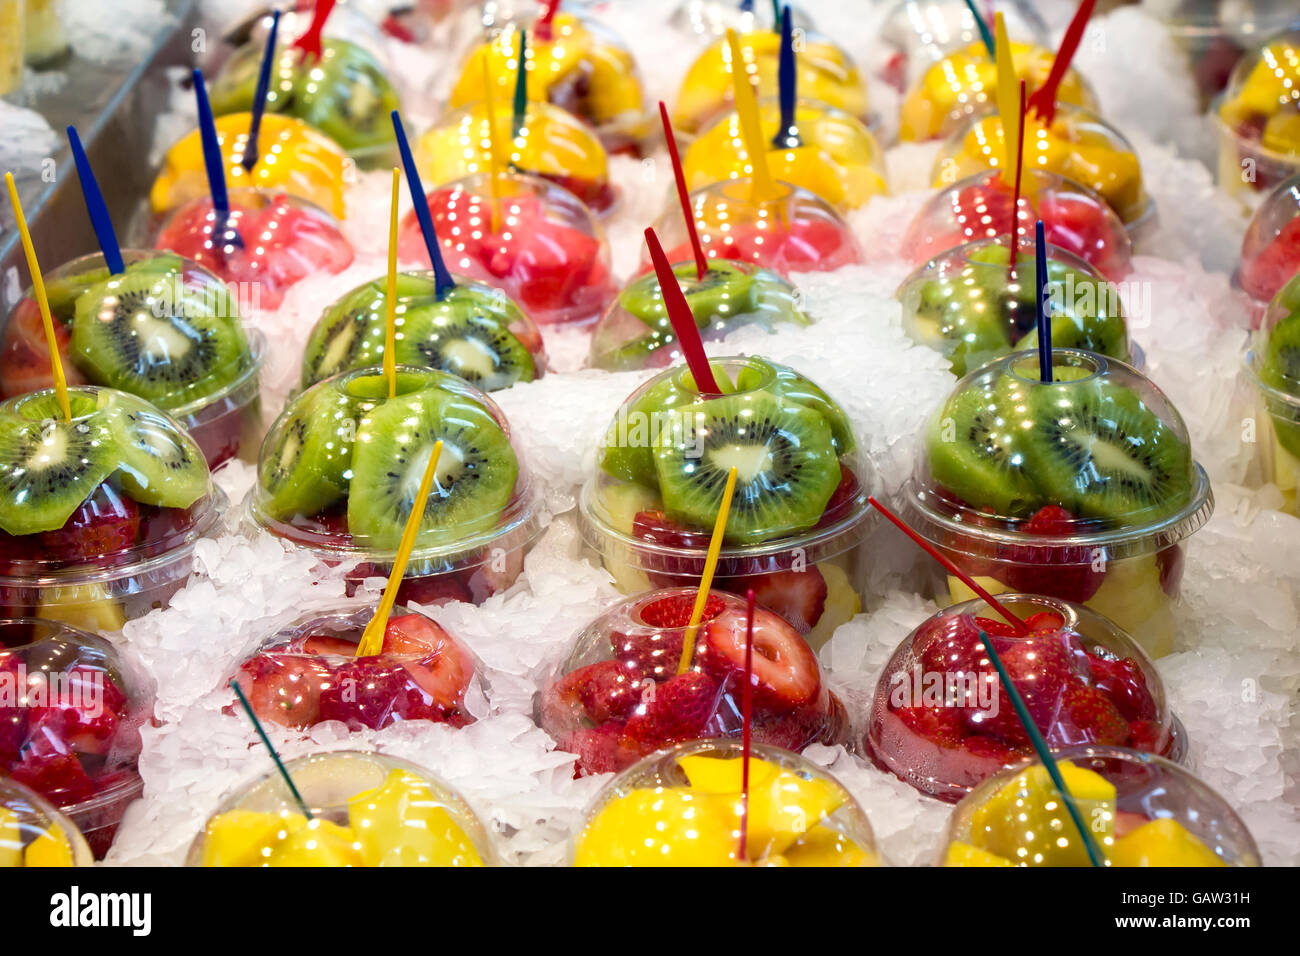 Frutta fresca insalata di cocktail in bicchieri di plastica su un mercato in stallo Foto Stock